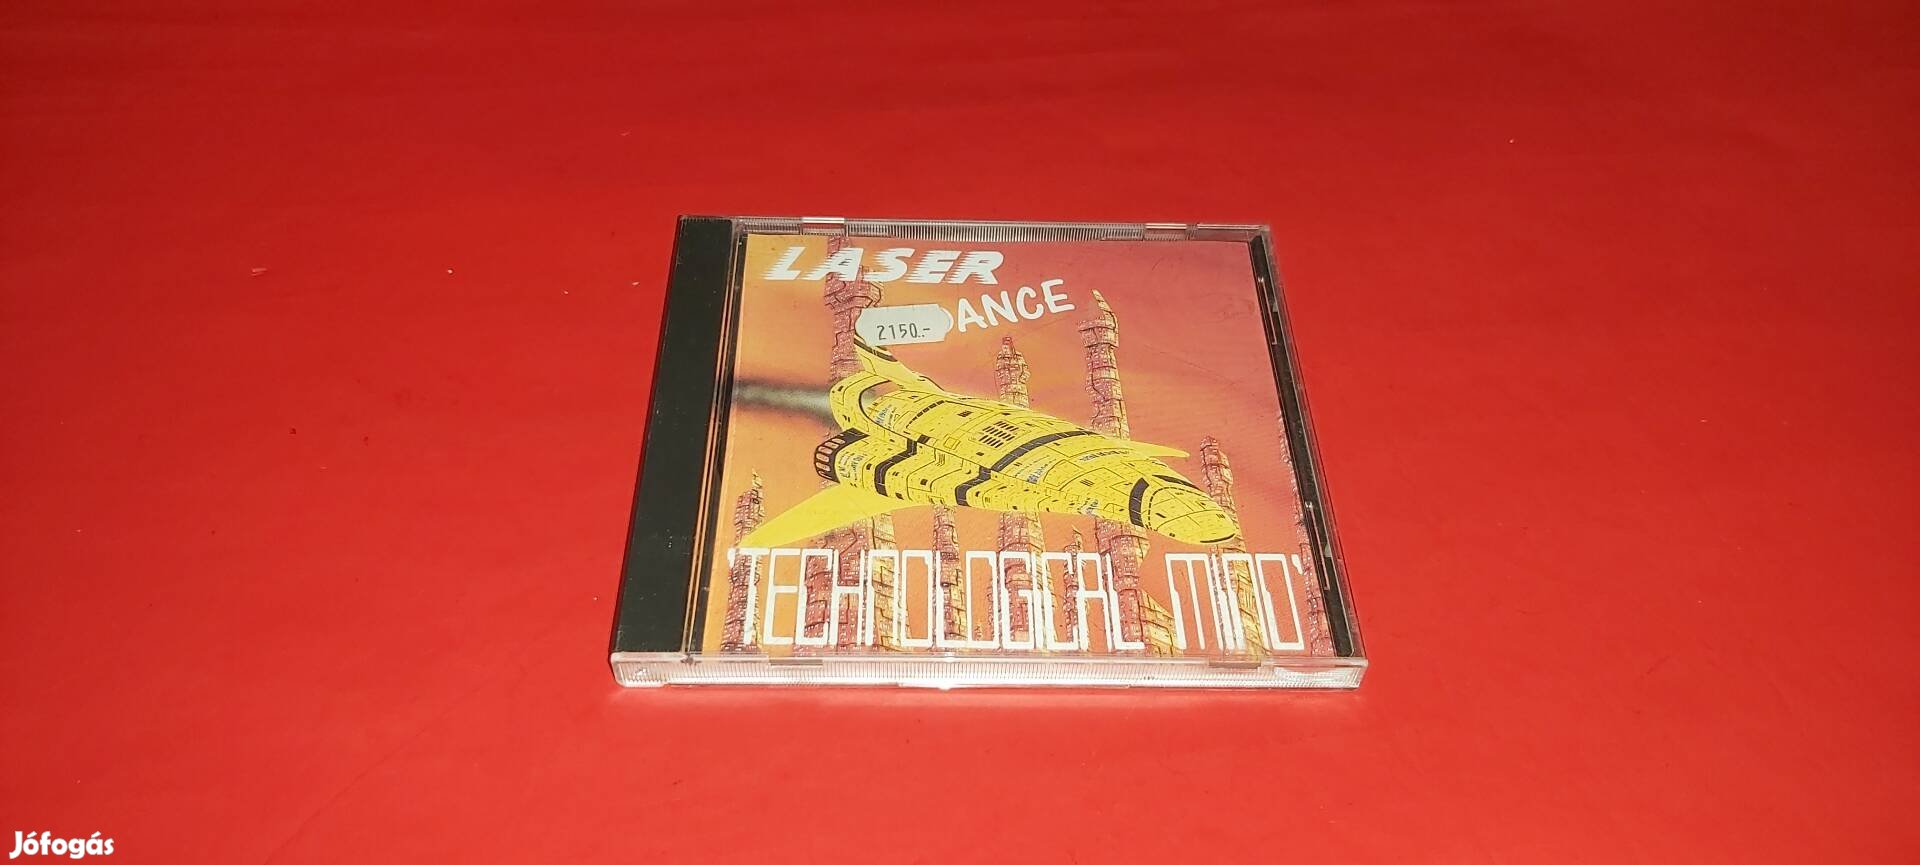 Laser Dance Technological mind Cd 1992